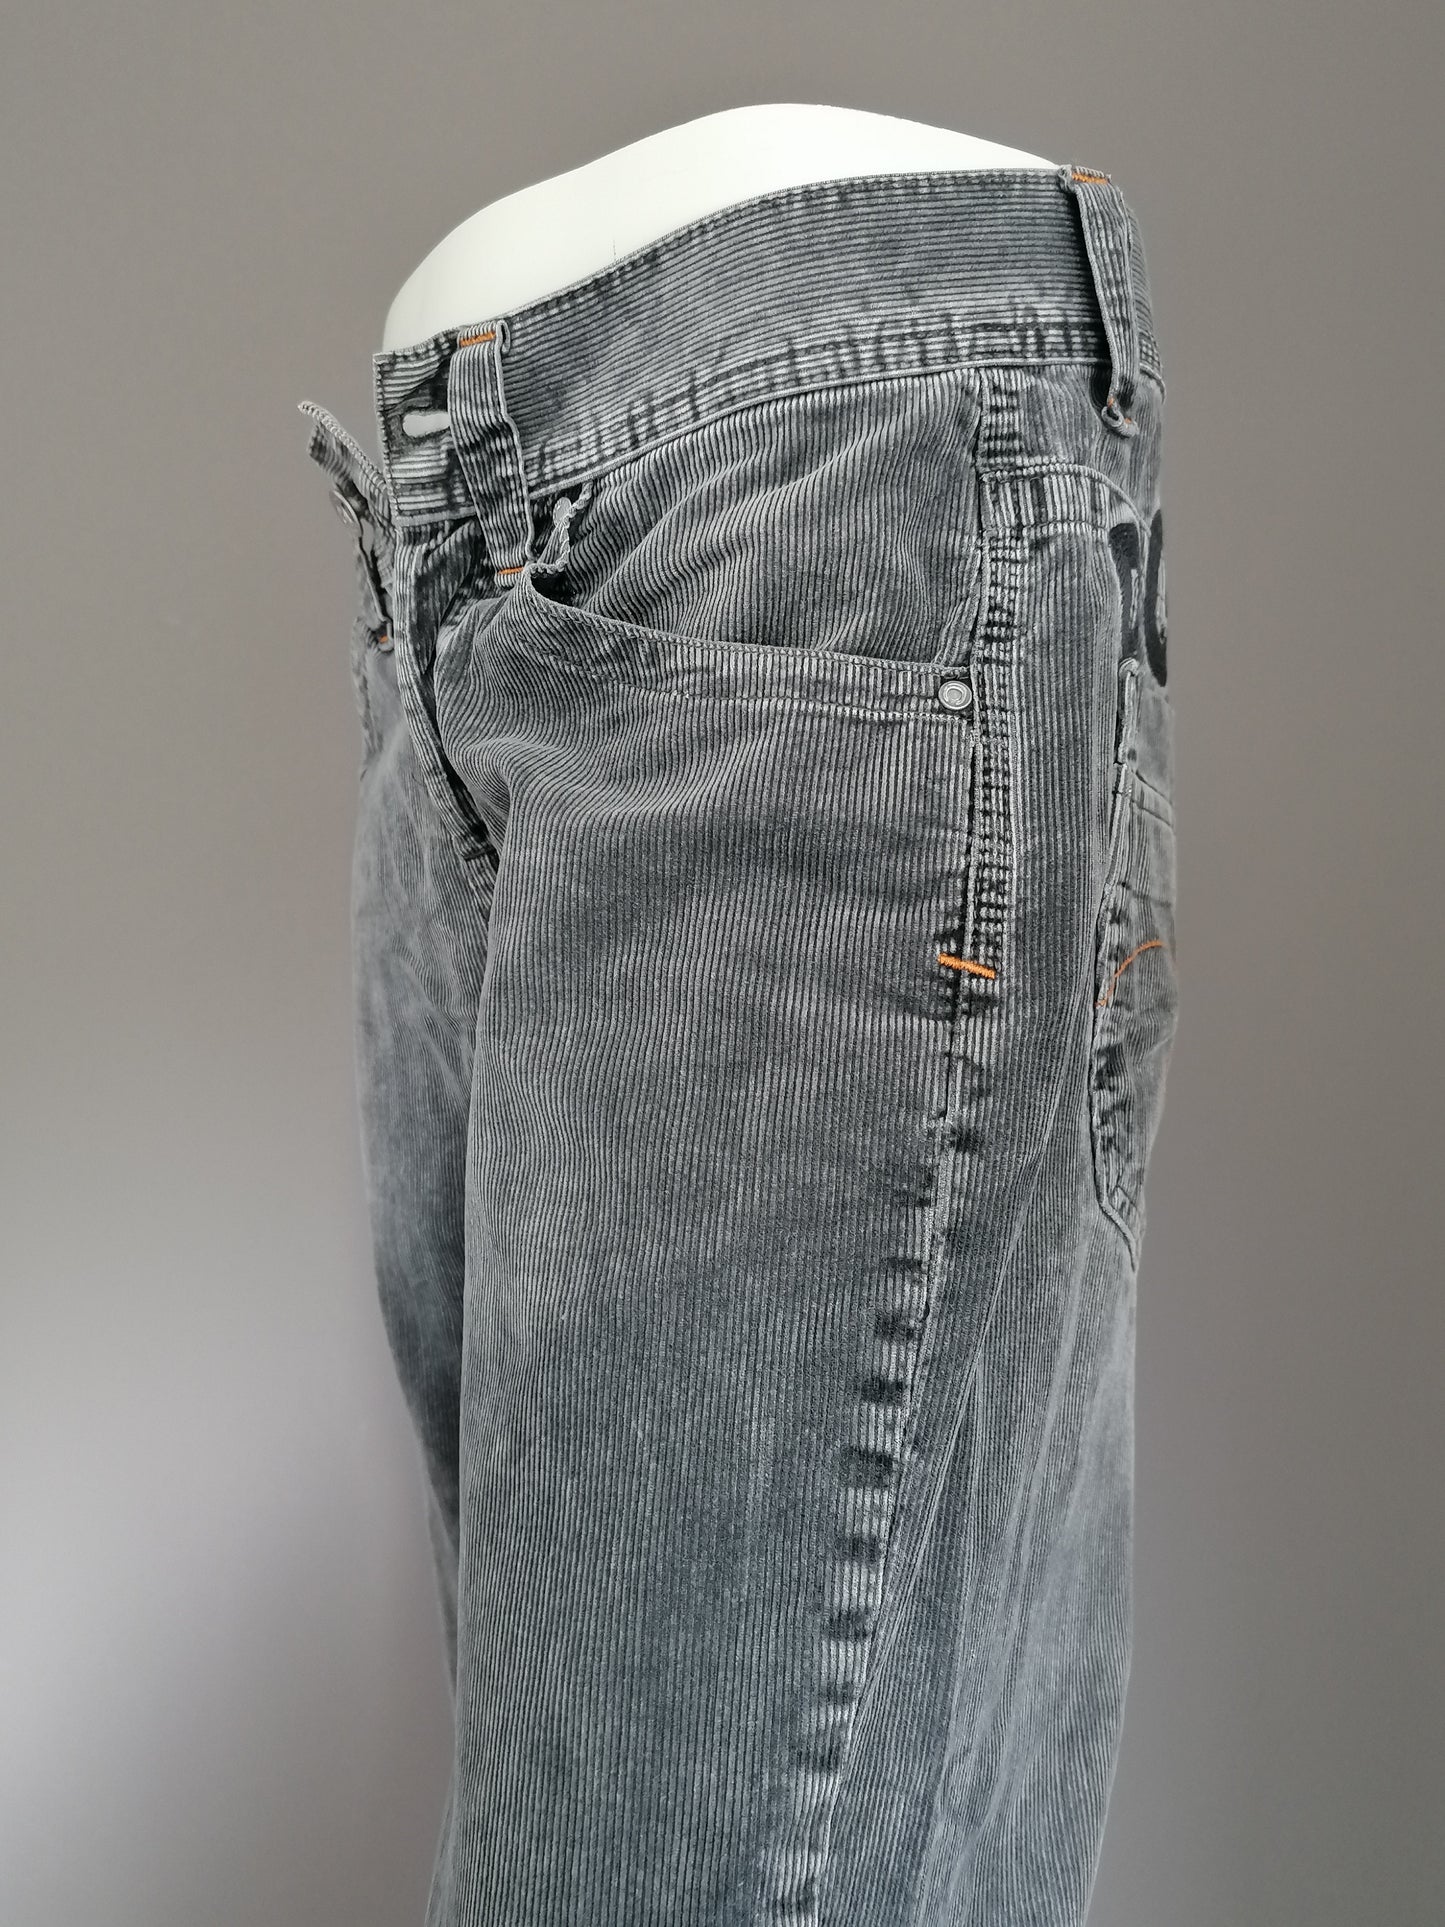 Pantaloni toracnocali a capo. Colorato grigio scuro. Taglia W30 - L34. Tipo tasca bassa.